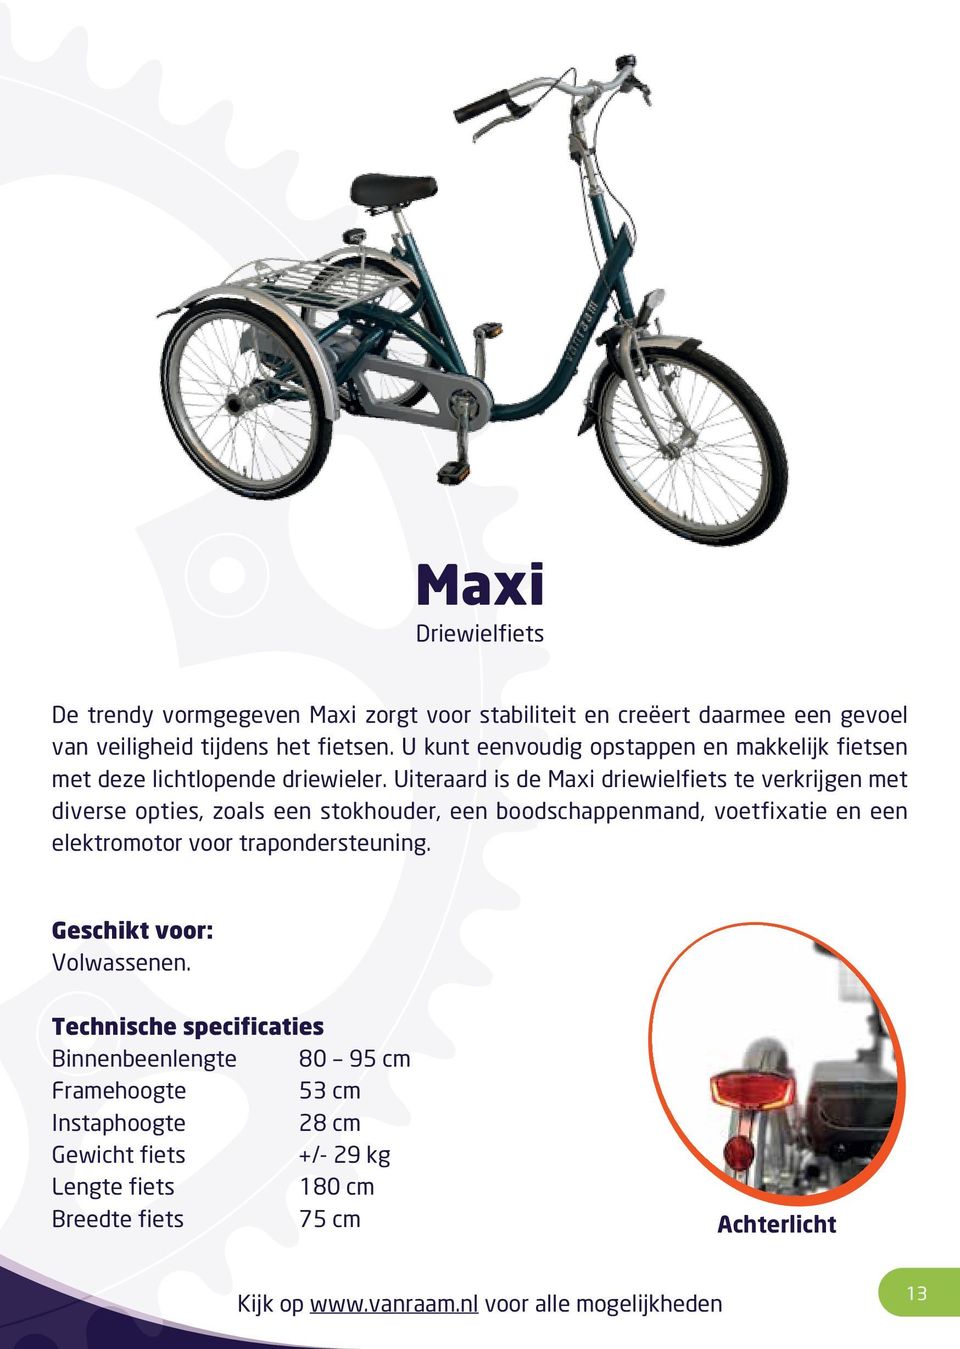 Uiteraard is de Maxi driewielfiets te verkrijgen met diverse opties, zoals een stokhouder, een boodschappenmand, voetfixatie en een elektromotor voor